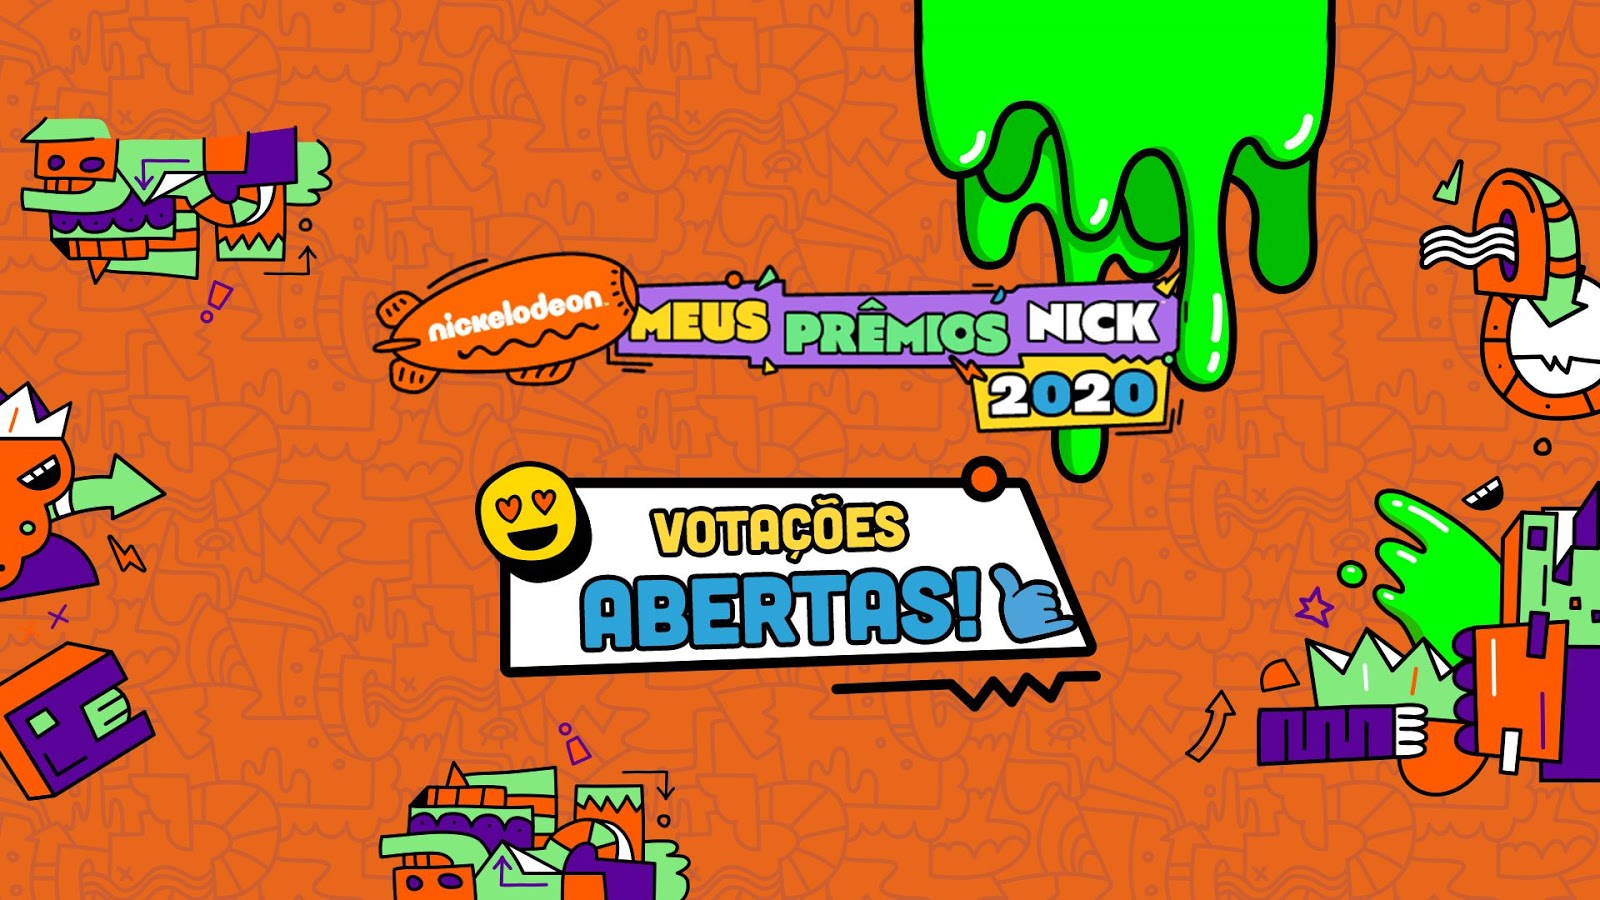 Meus Prêmios Nick: Nickelodeon divulga categorias e indicados da